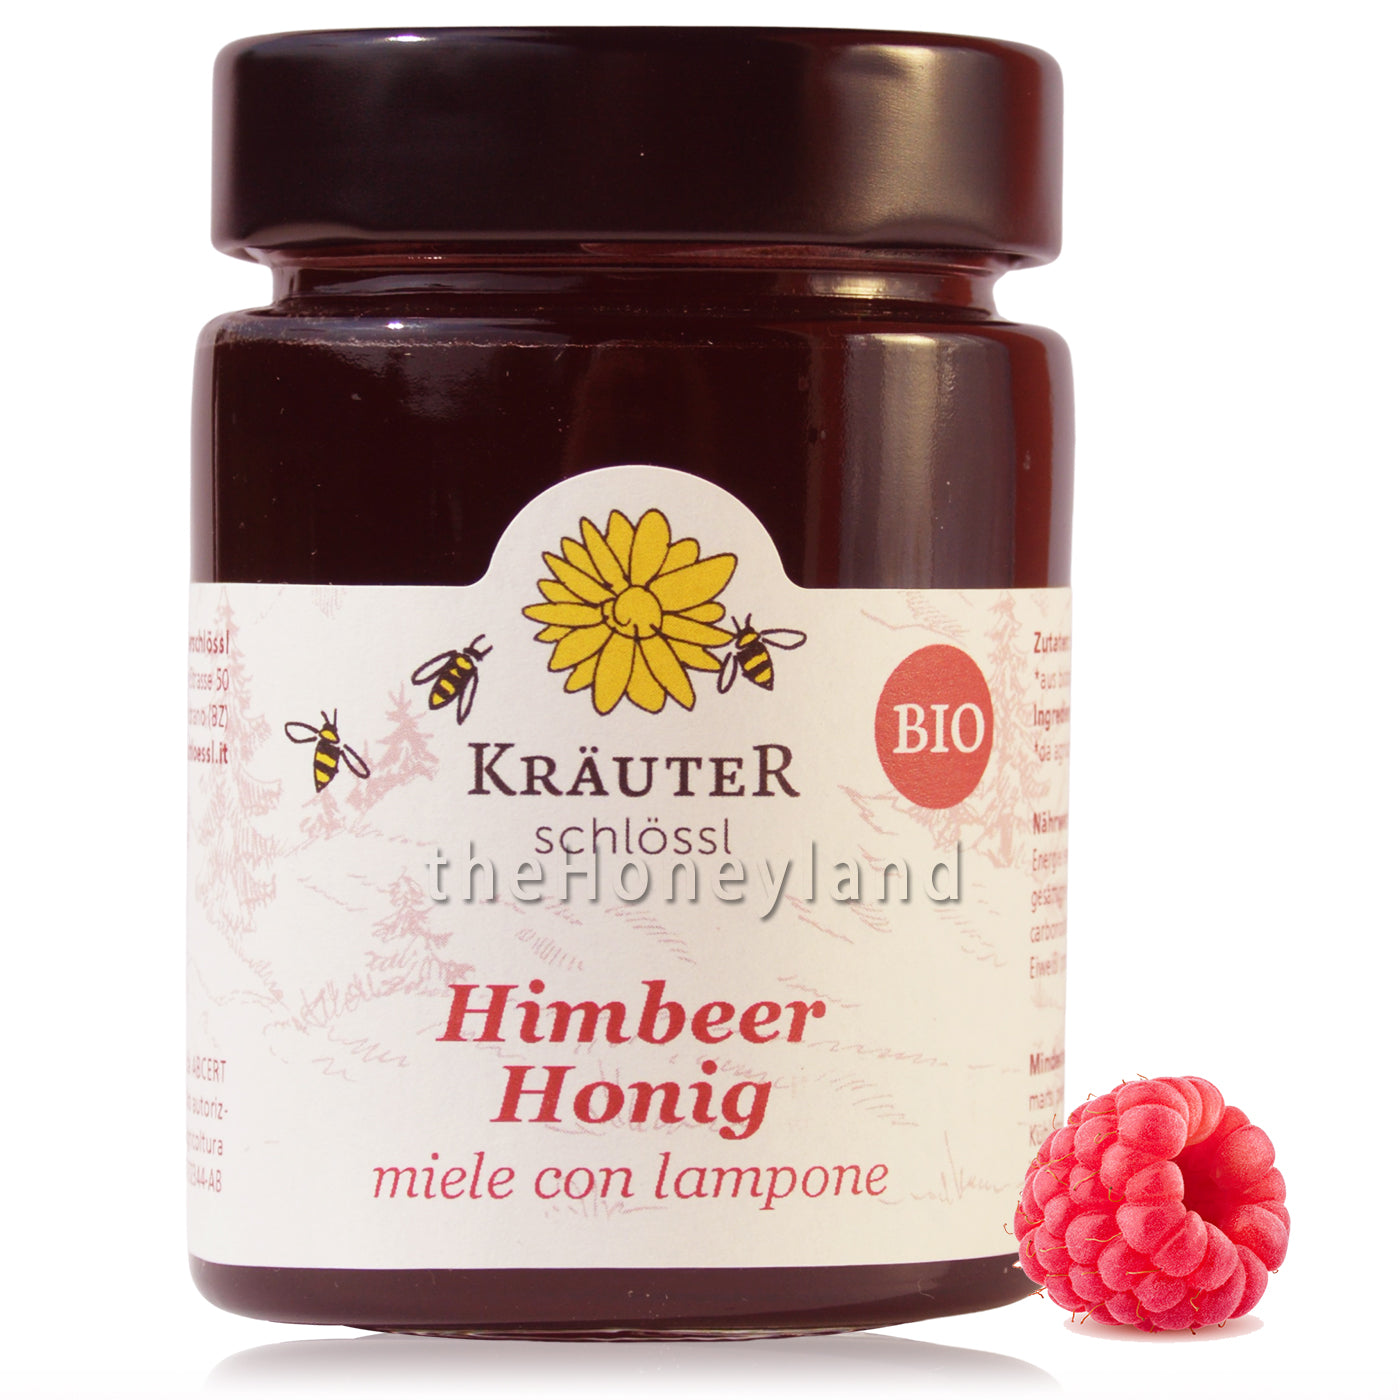 Honey with raspberries from Alto Adige